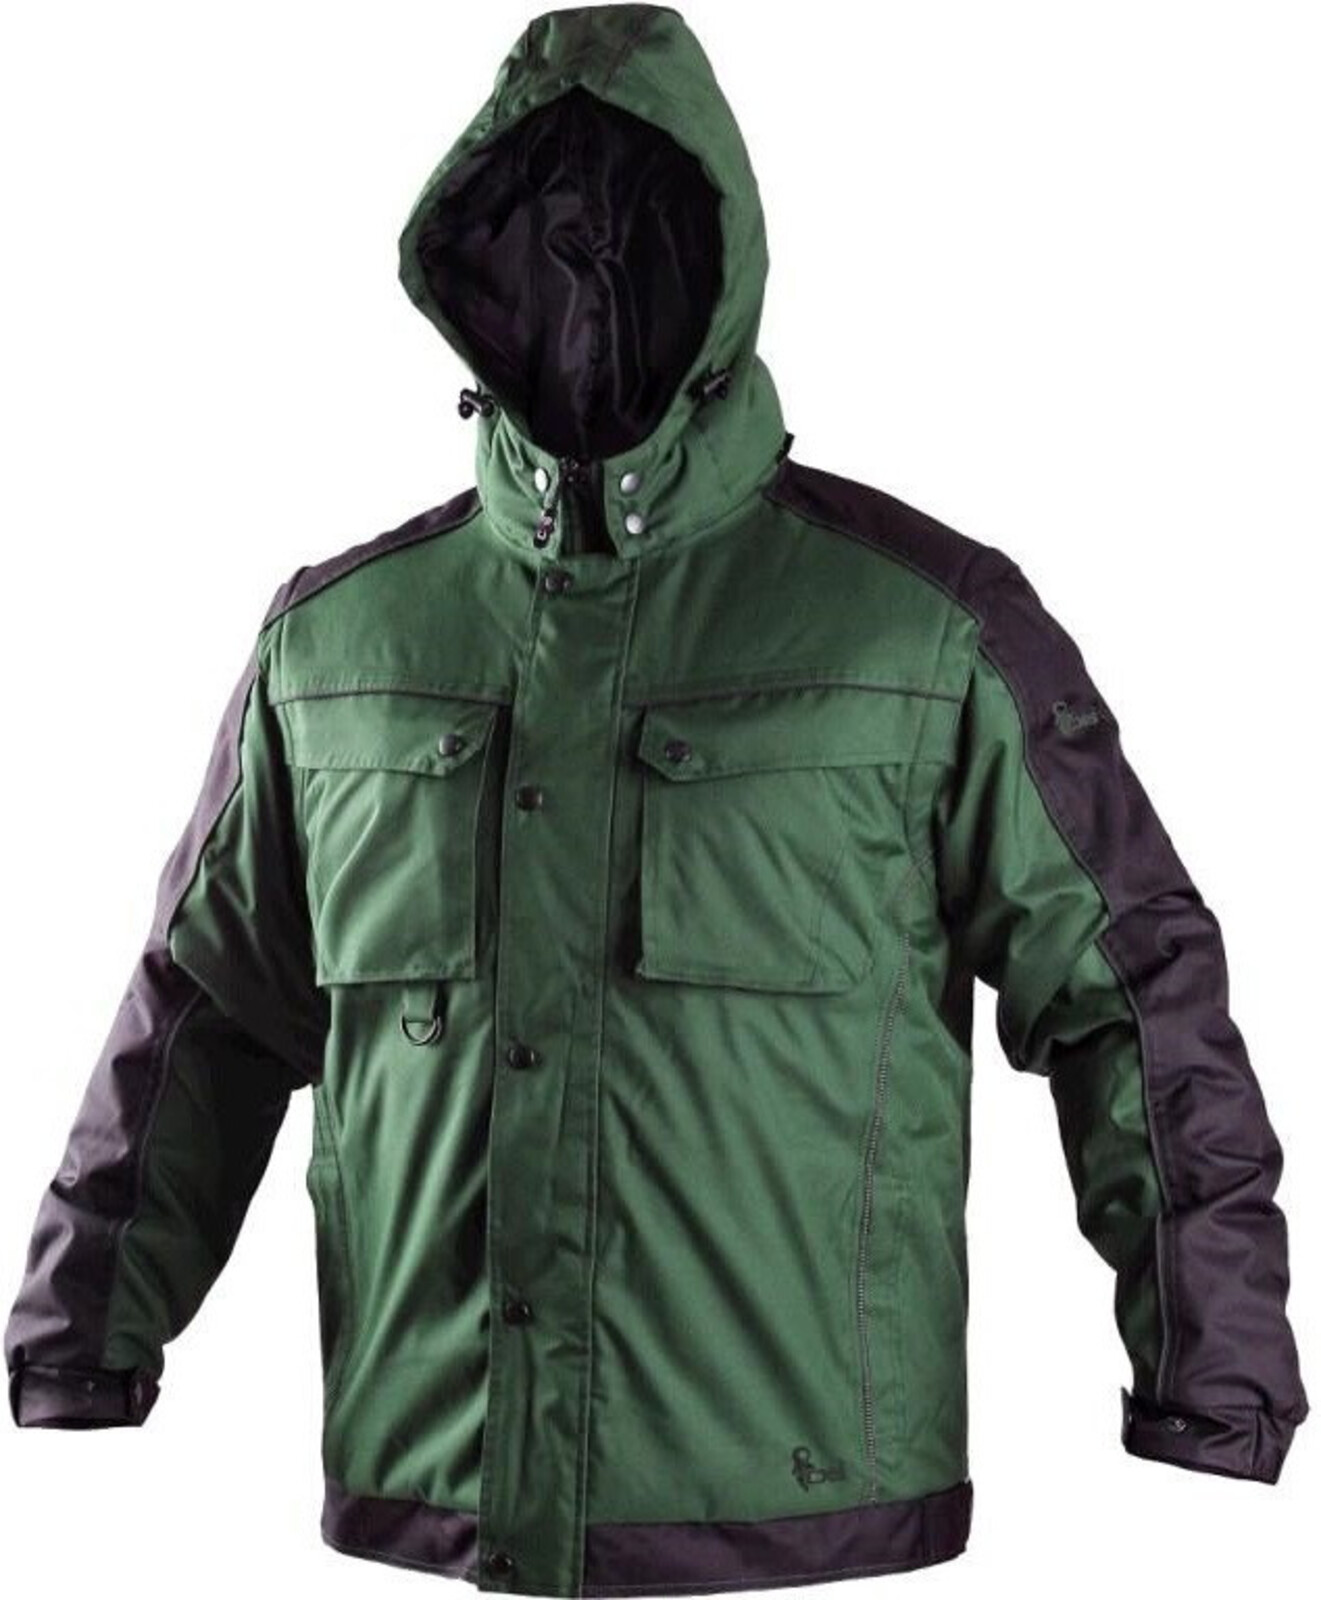 Pánska zimná bunda CXS Irvine 2v1 - veľkosť: L, farba: zelená/čierna